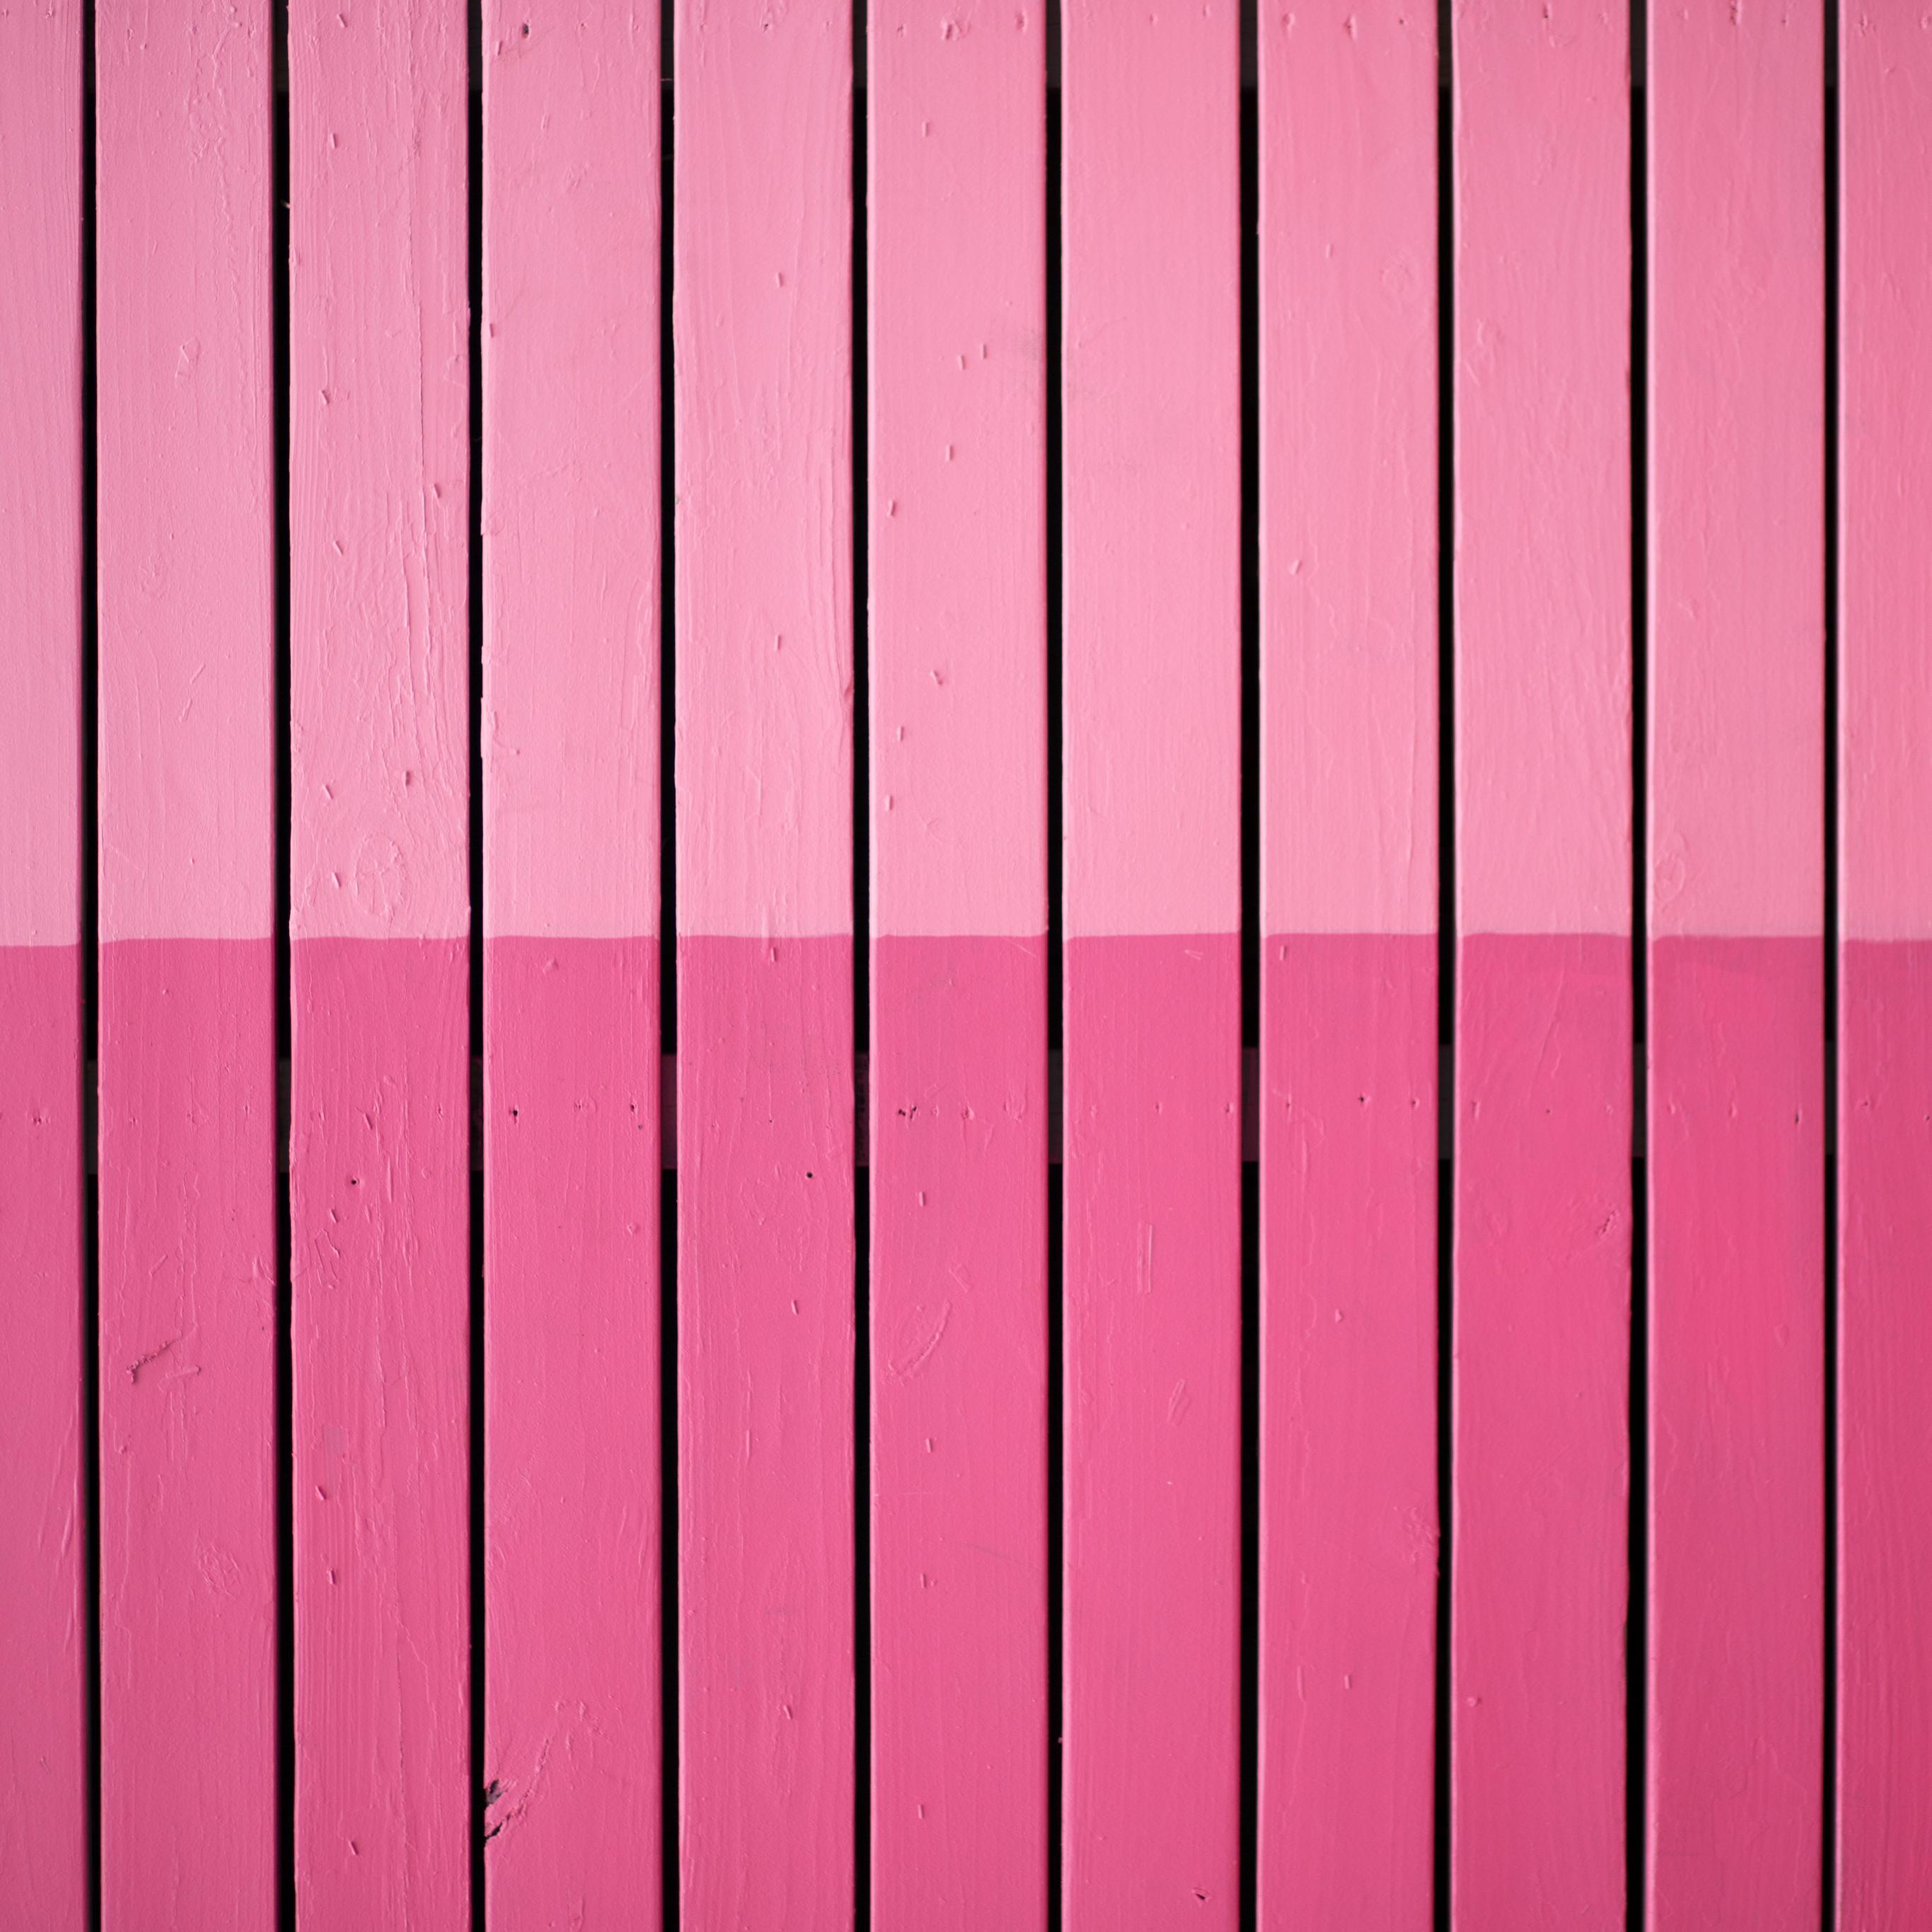 Pink Gradient Wallpapers - Wallpaper Cave